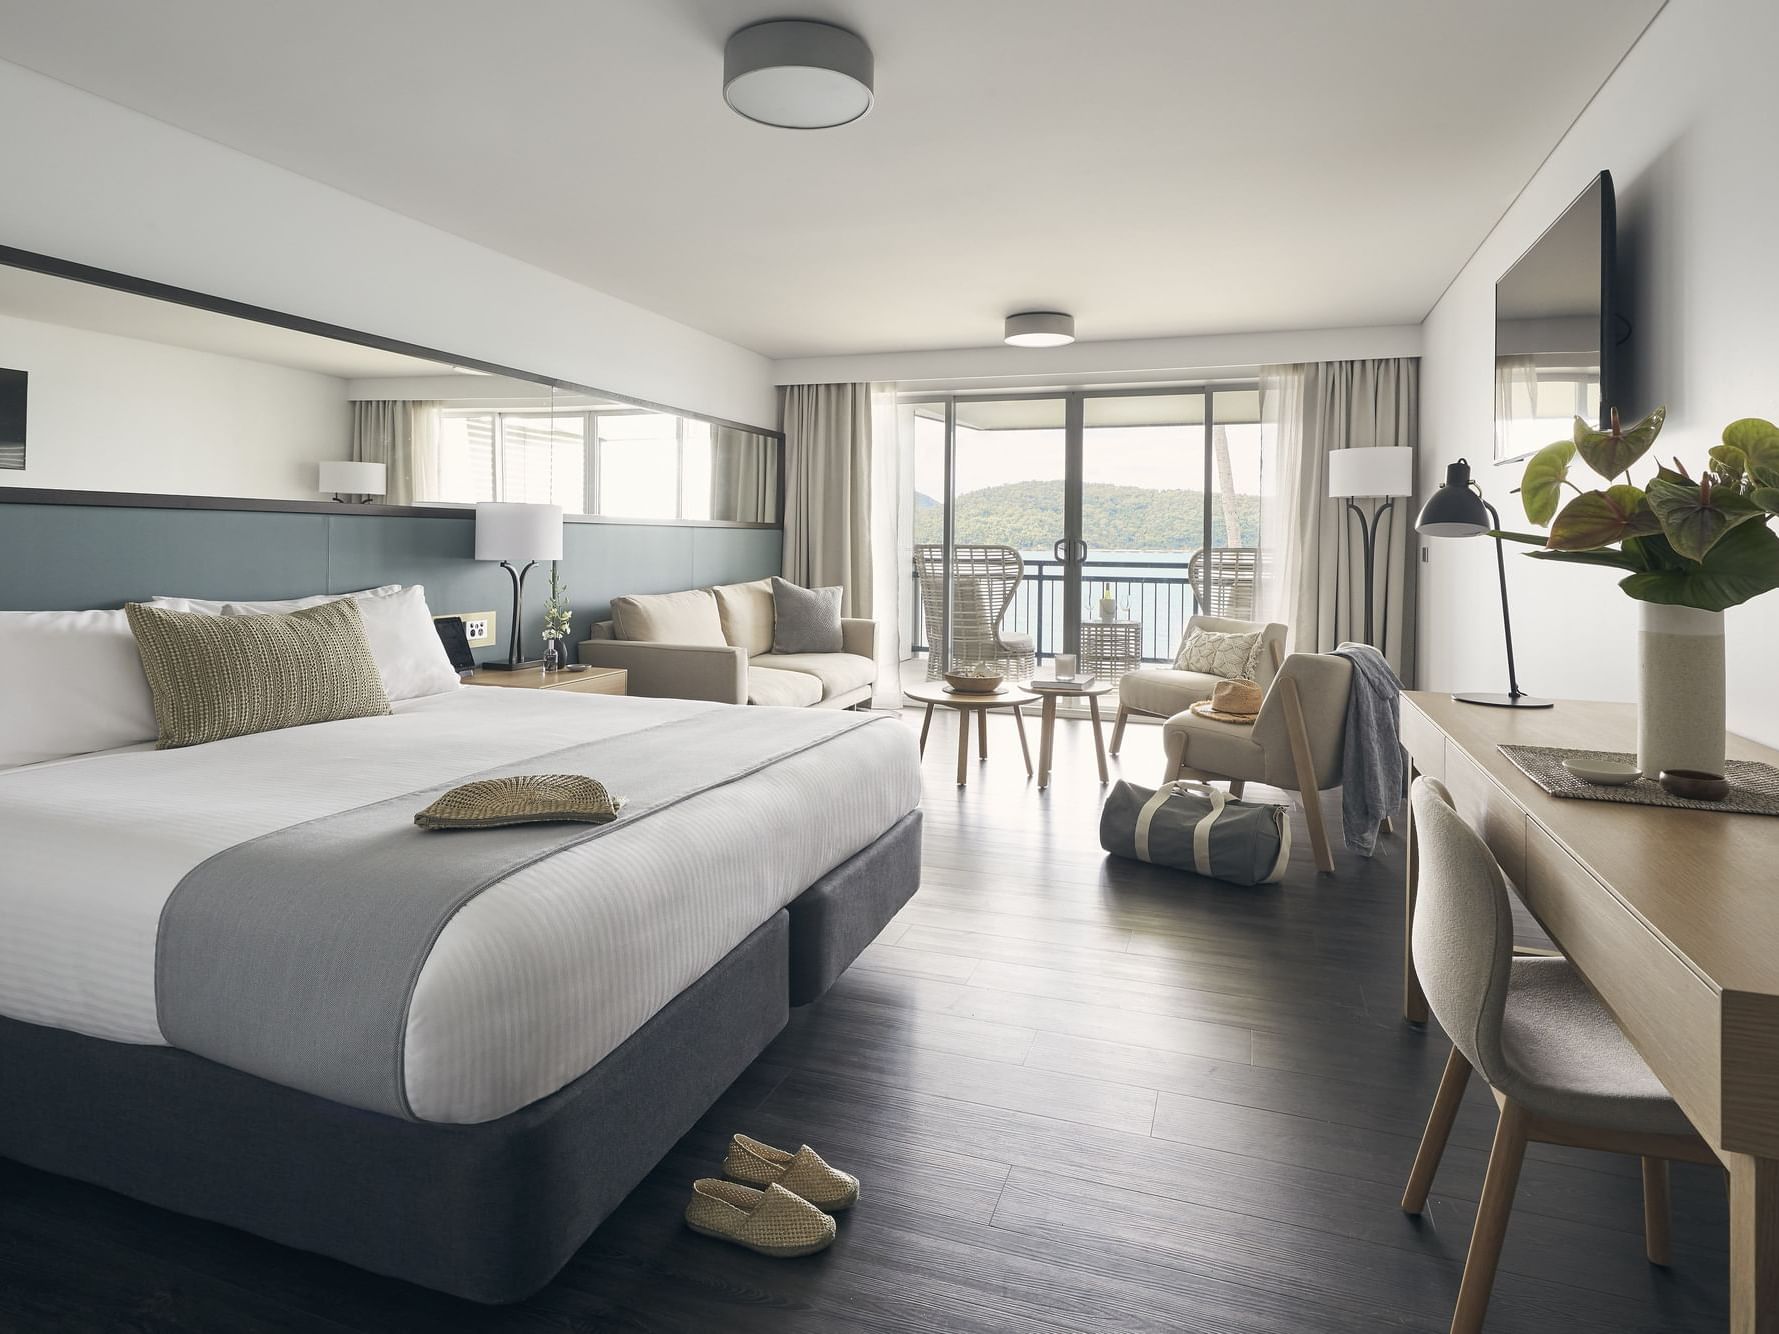 Deluxe Ocean Terrace room at Daydream Island Resort